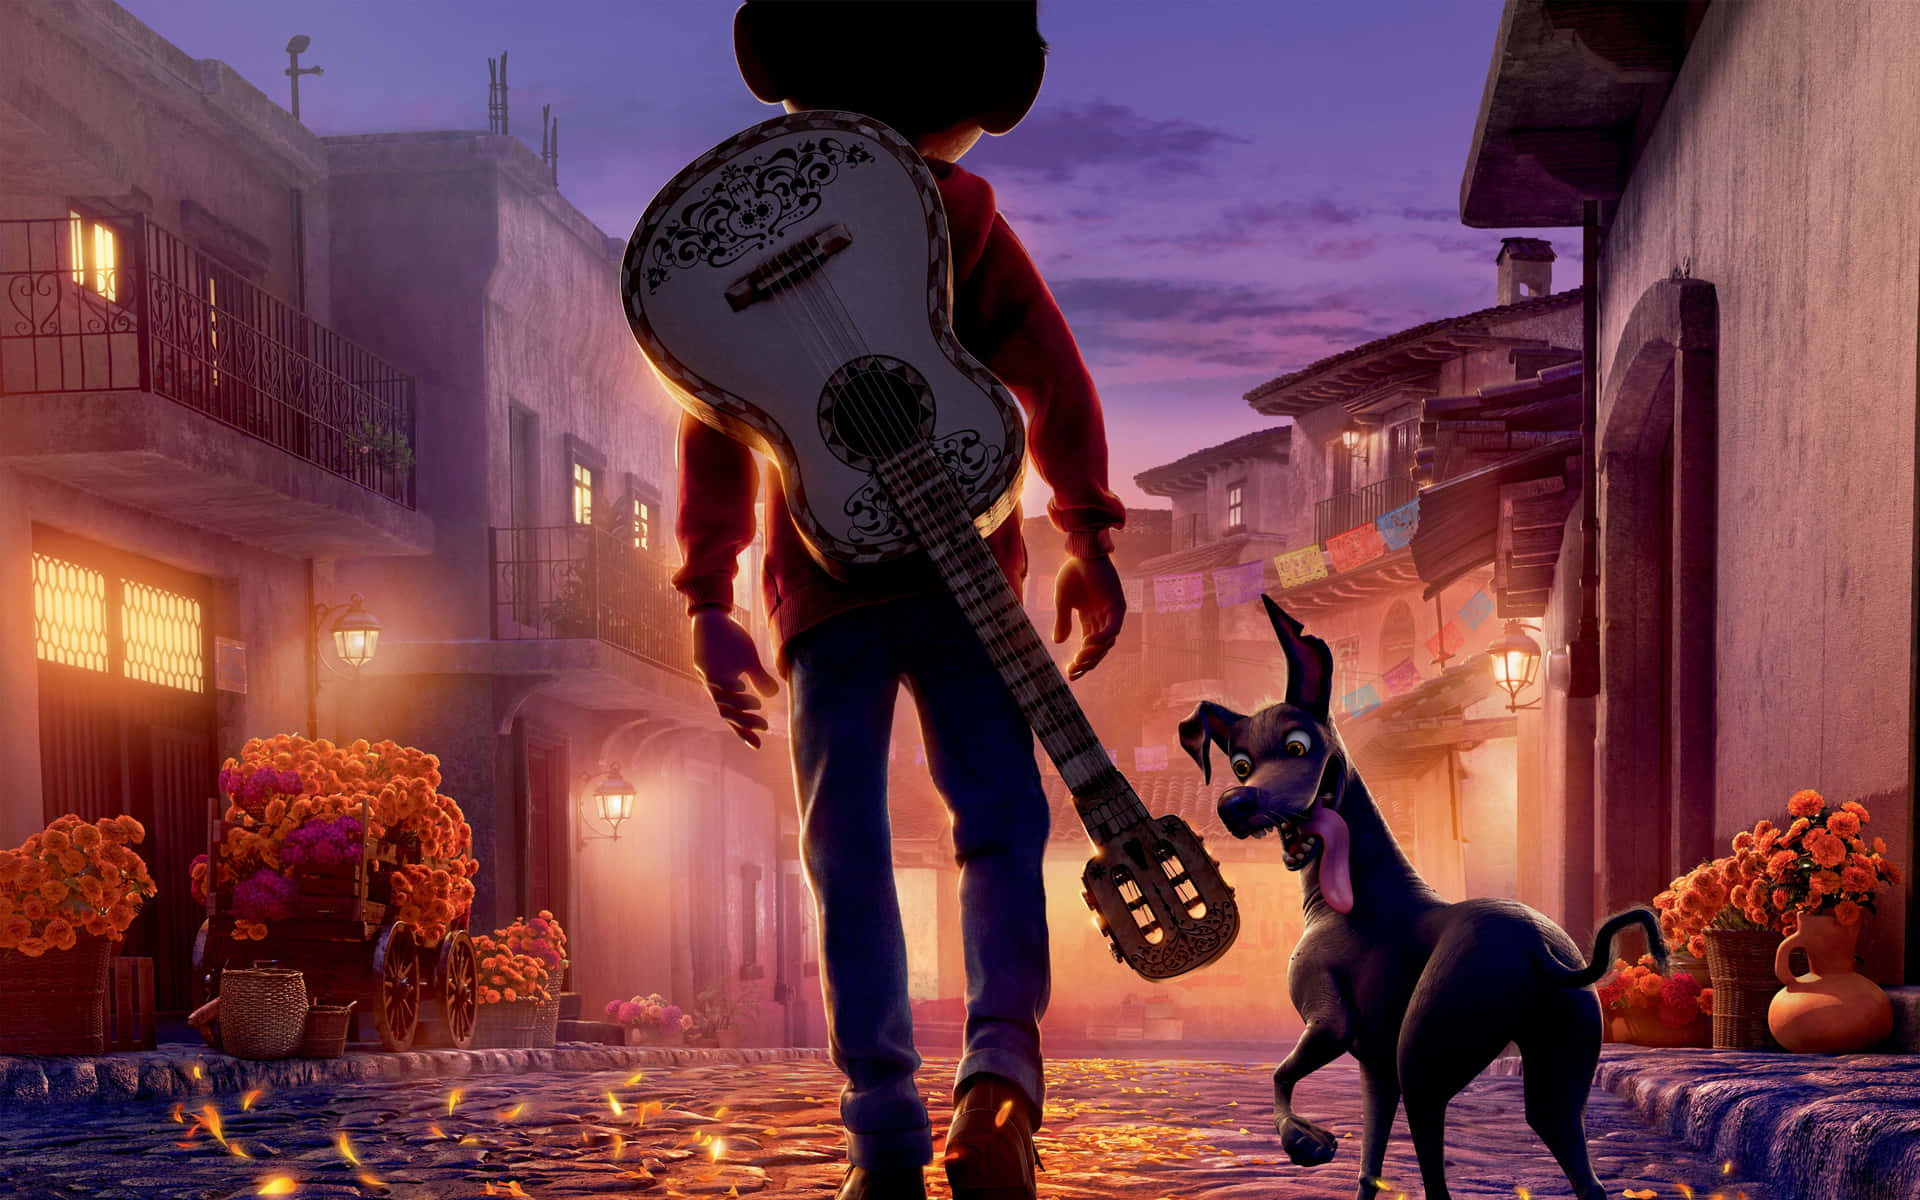 Træd ind i de dødes rige med en uforglemmelig oplevelse i Disney•Pixar's 